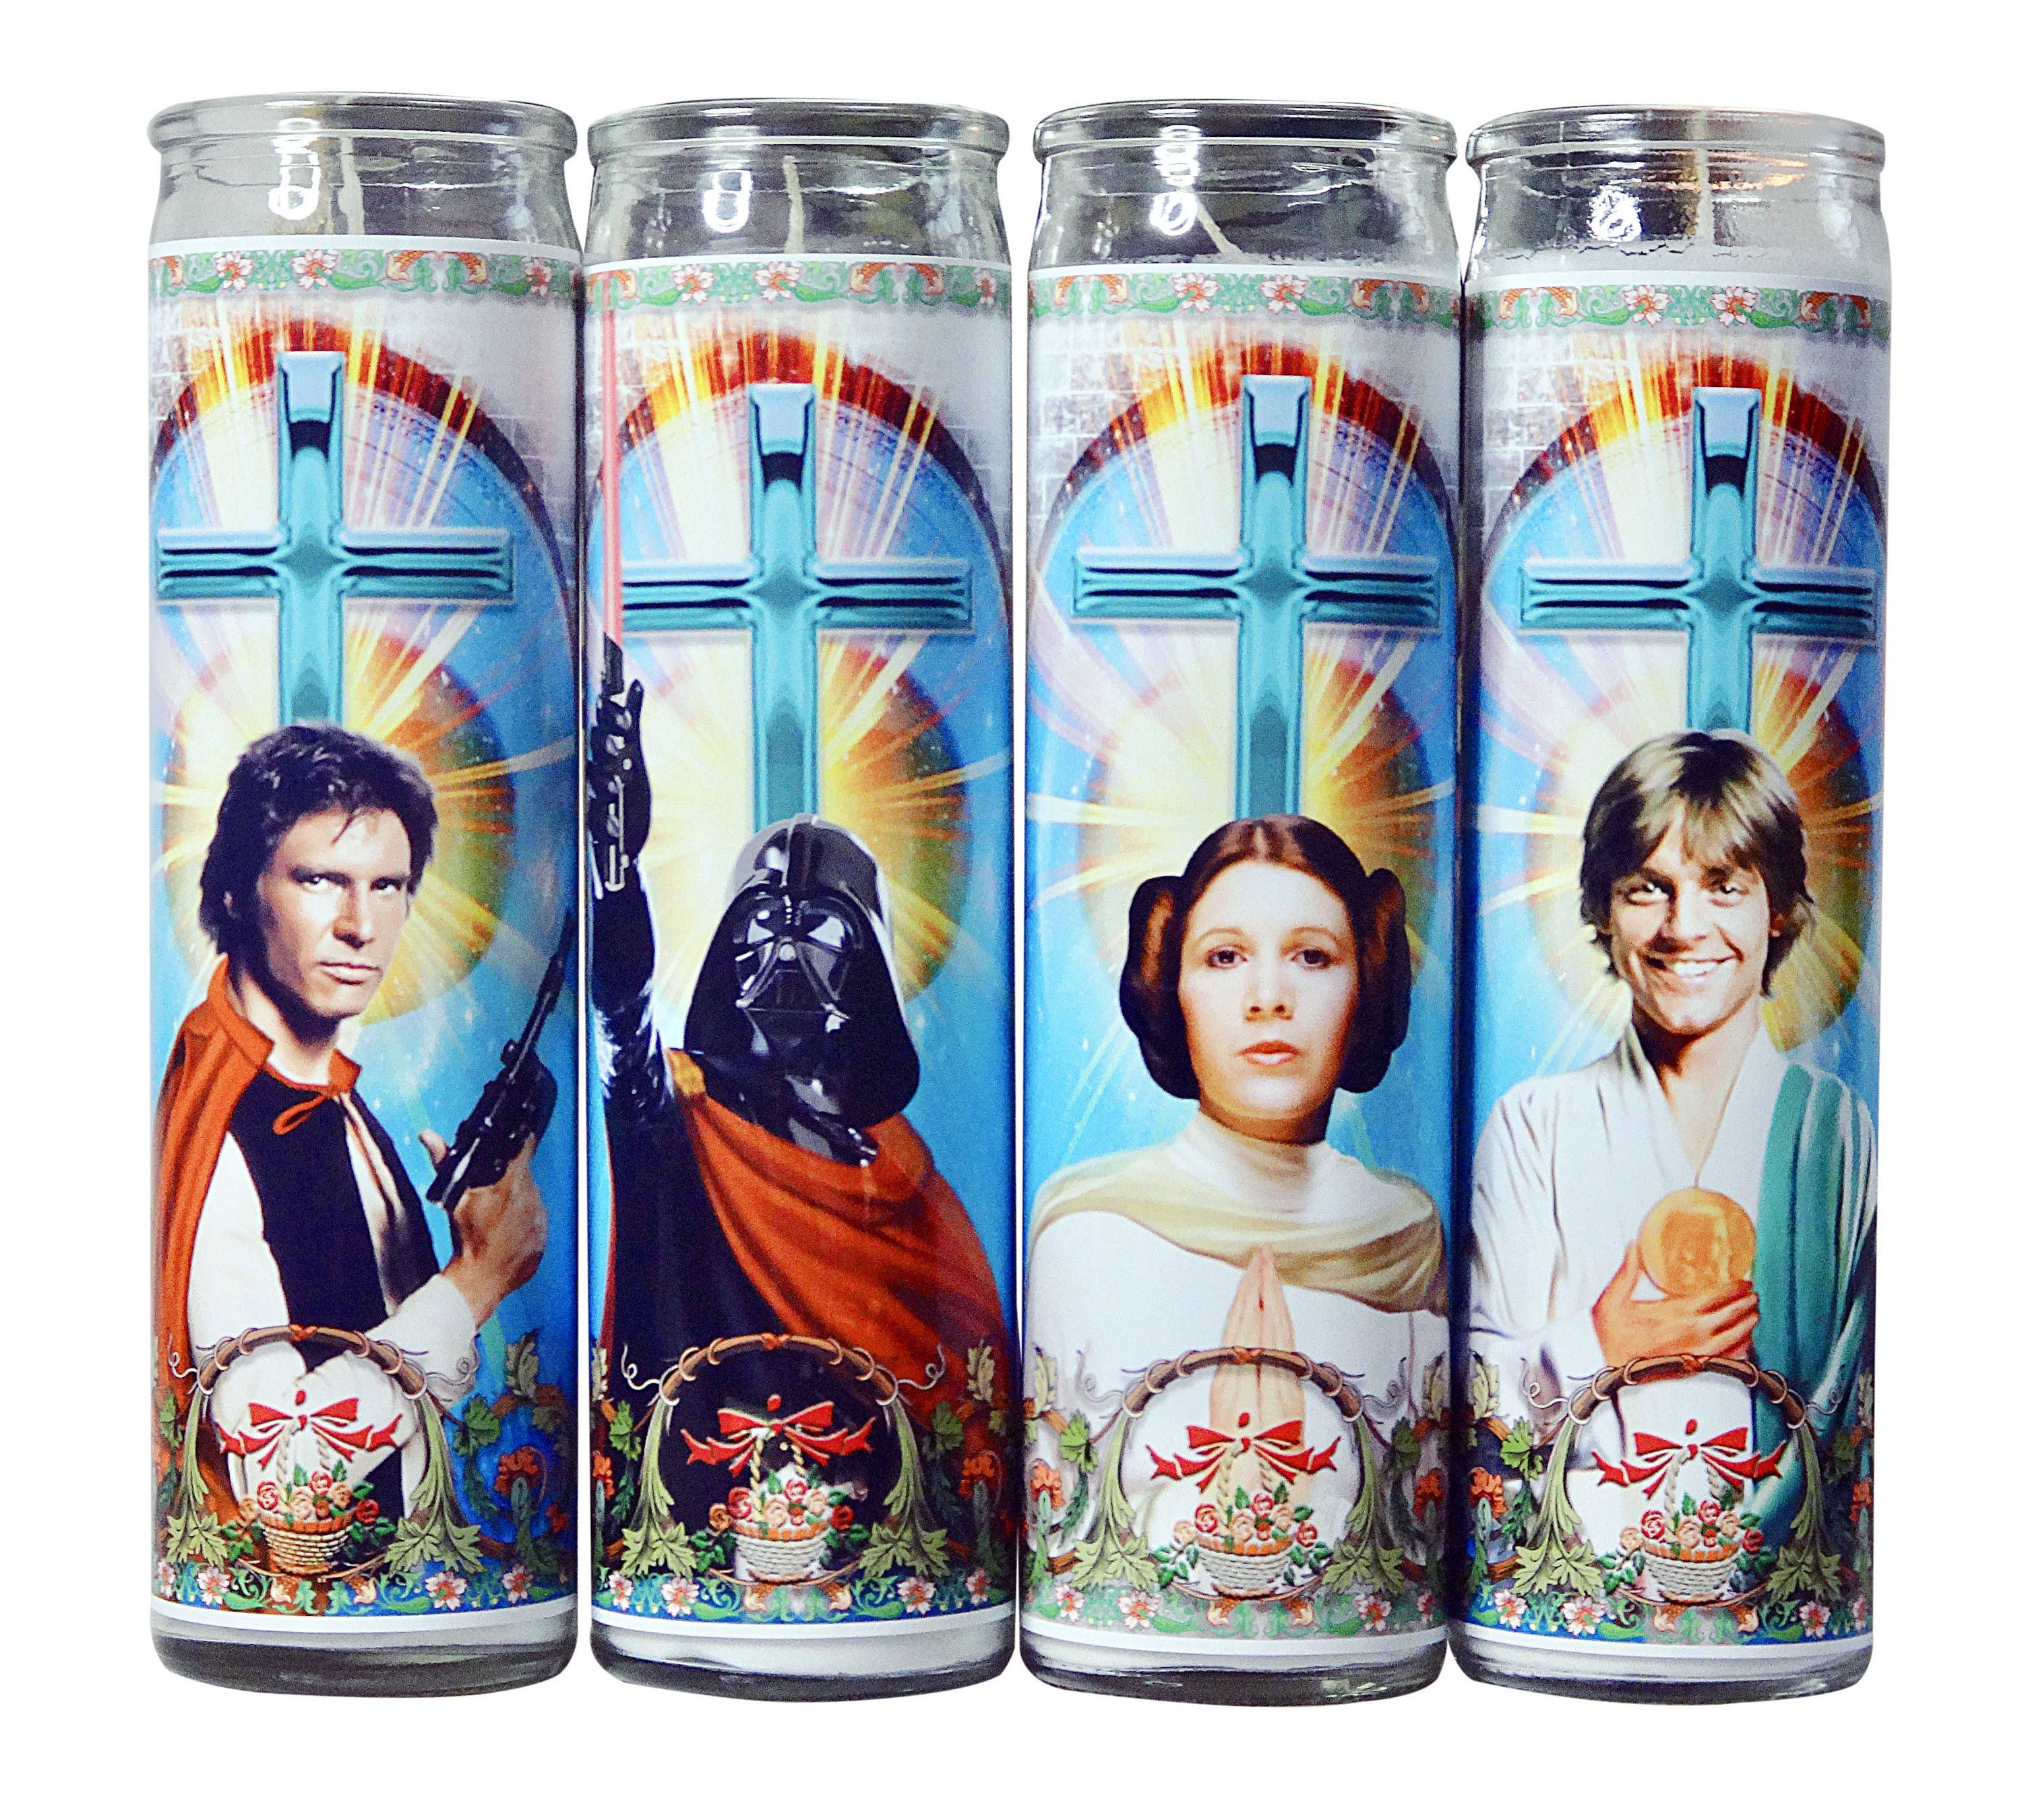 Star Wars Celebrity Prayer Candle Set